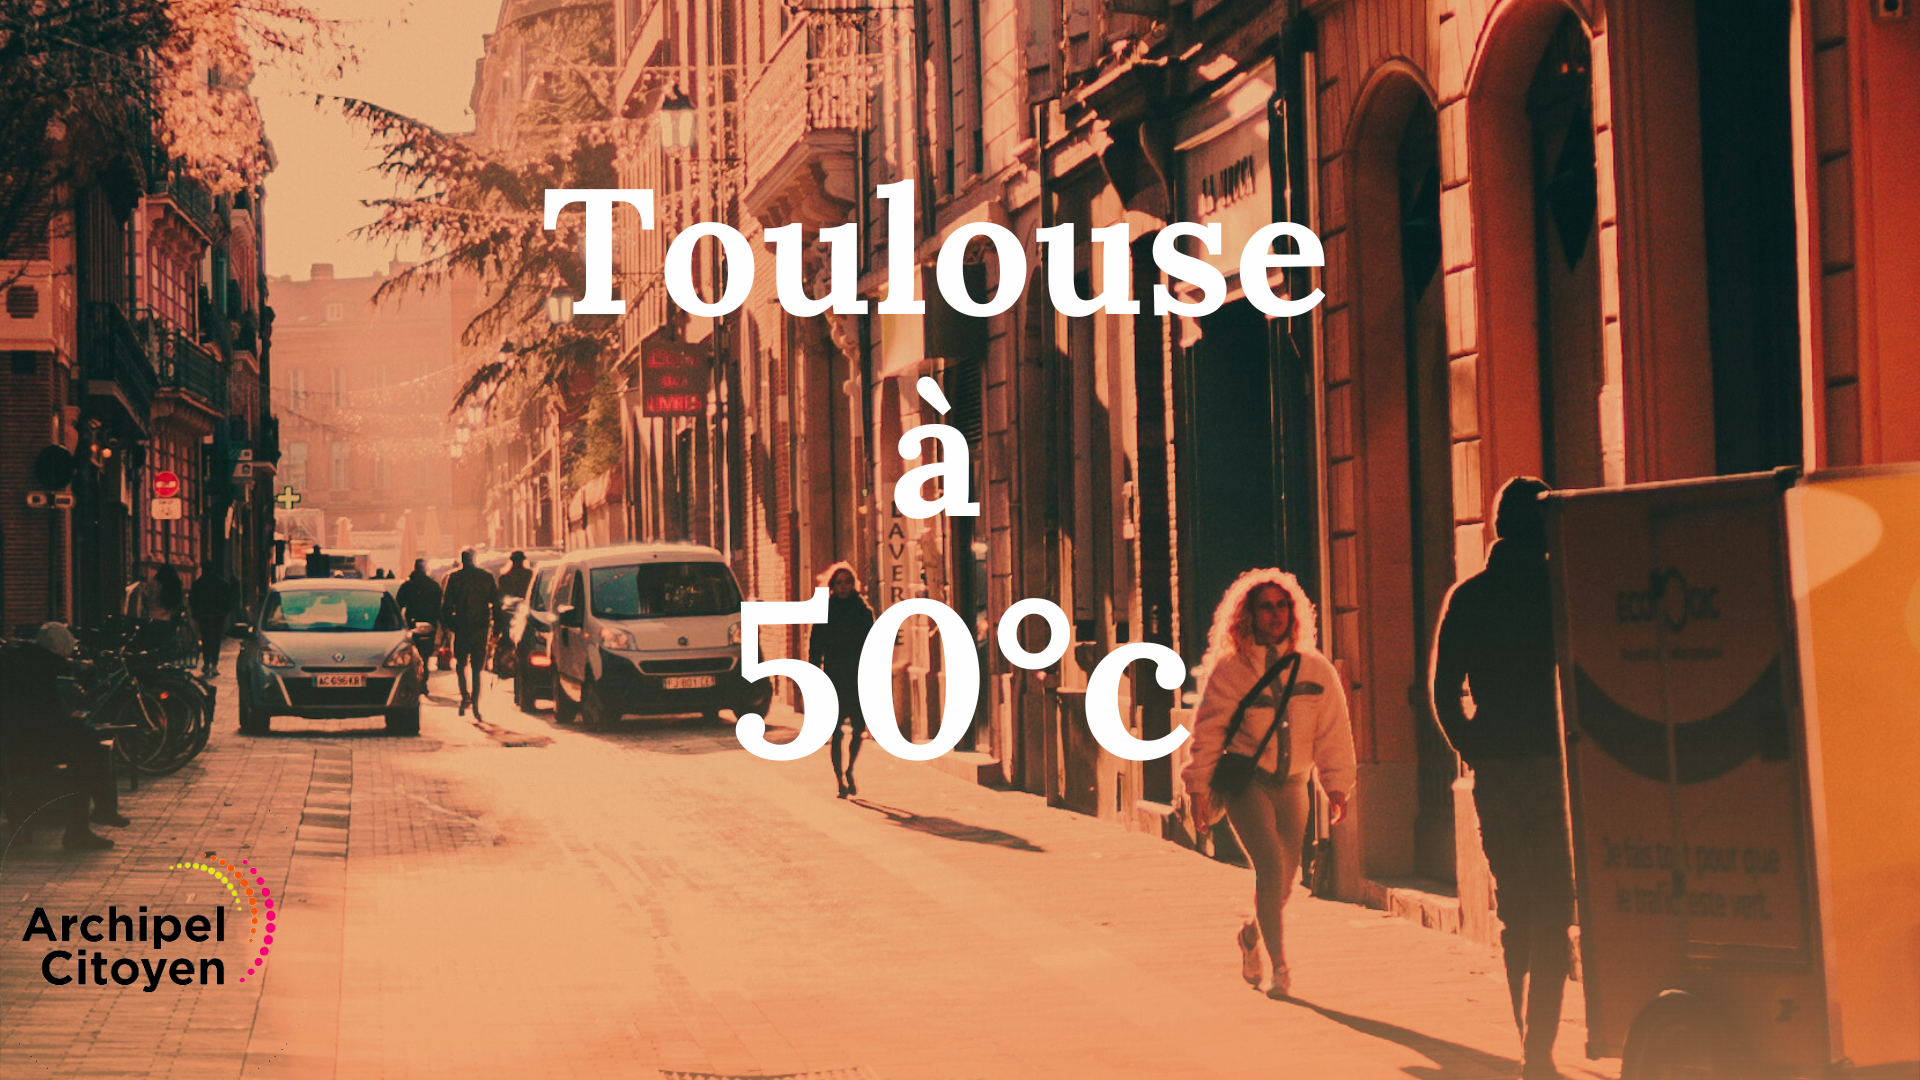 « Toulouse à 50°c » le 23 octobre